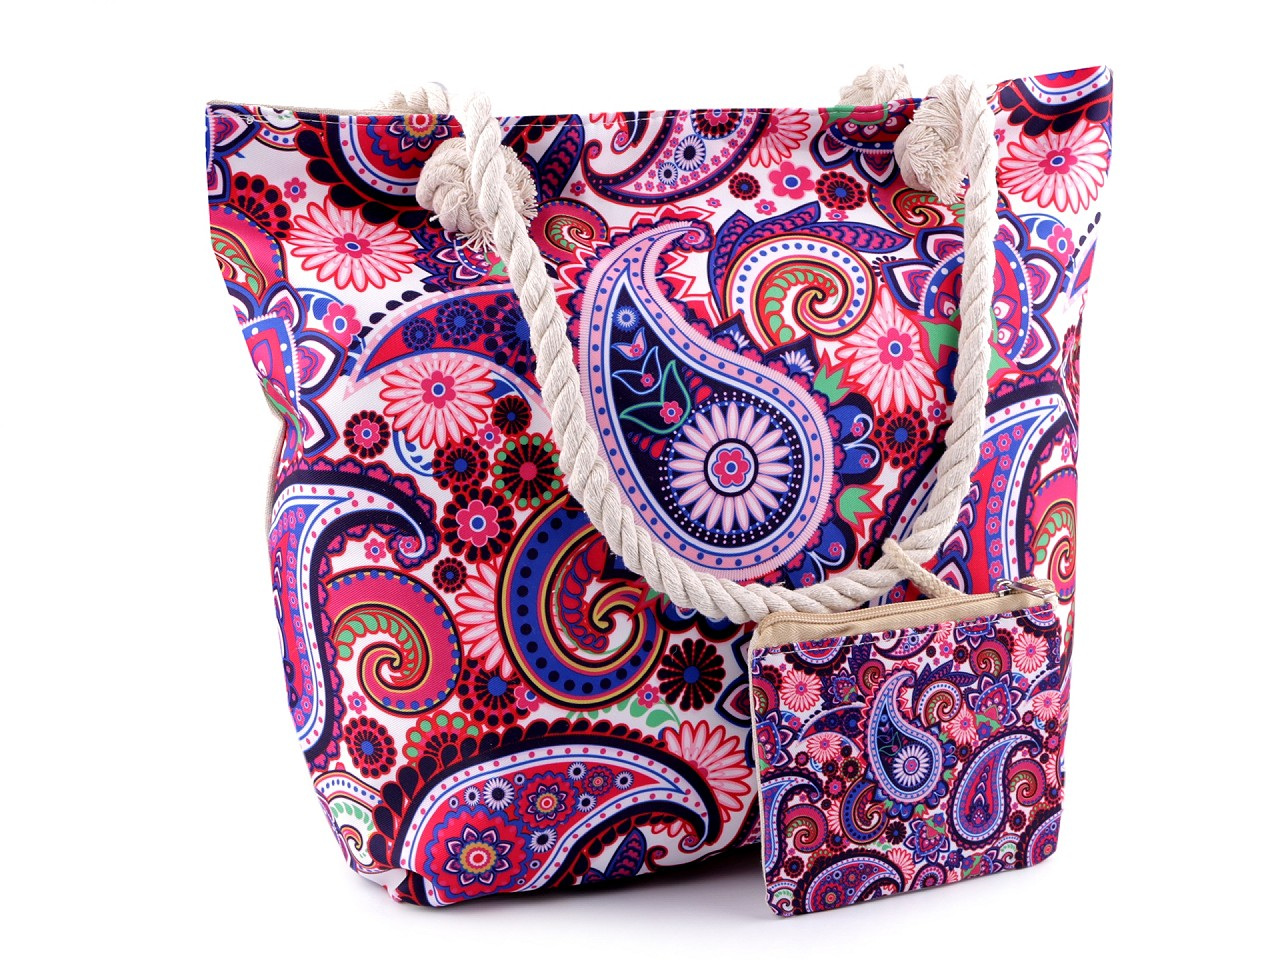 Letní / plážová taška mandala, paisley s taštičkou 39x50 cm, barva 4 multikolor paisley